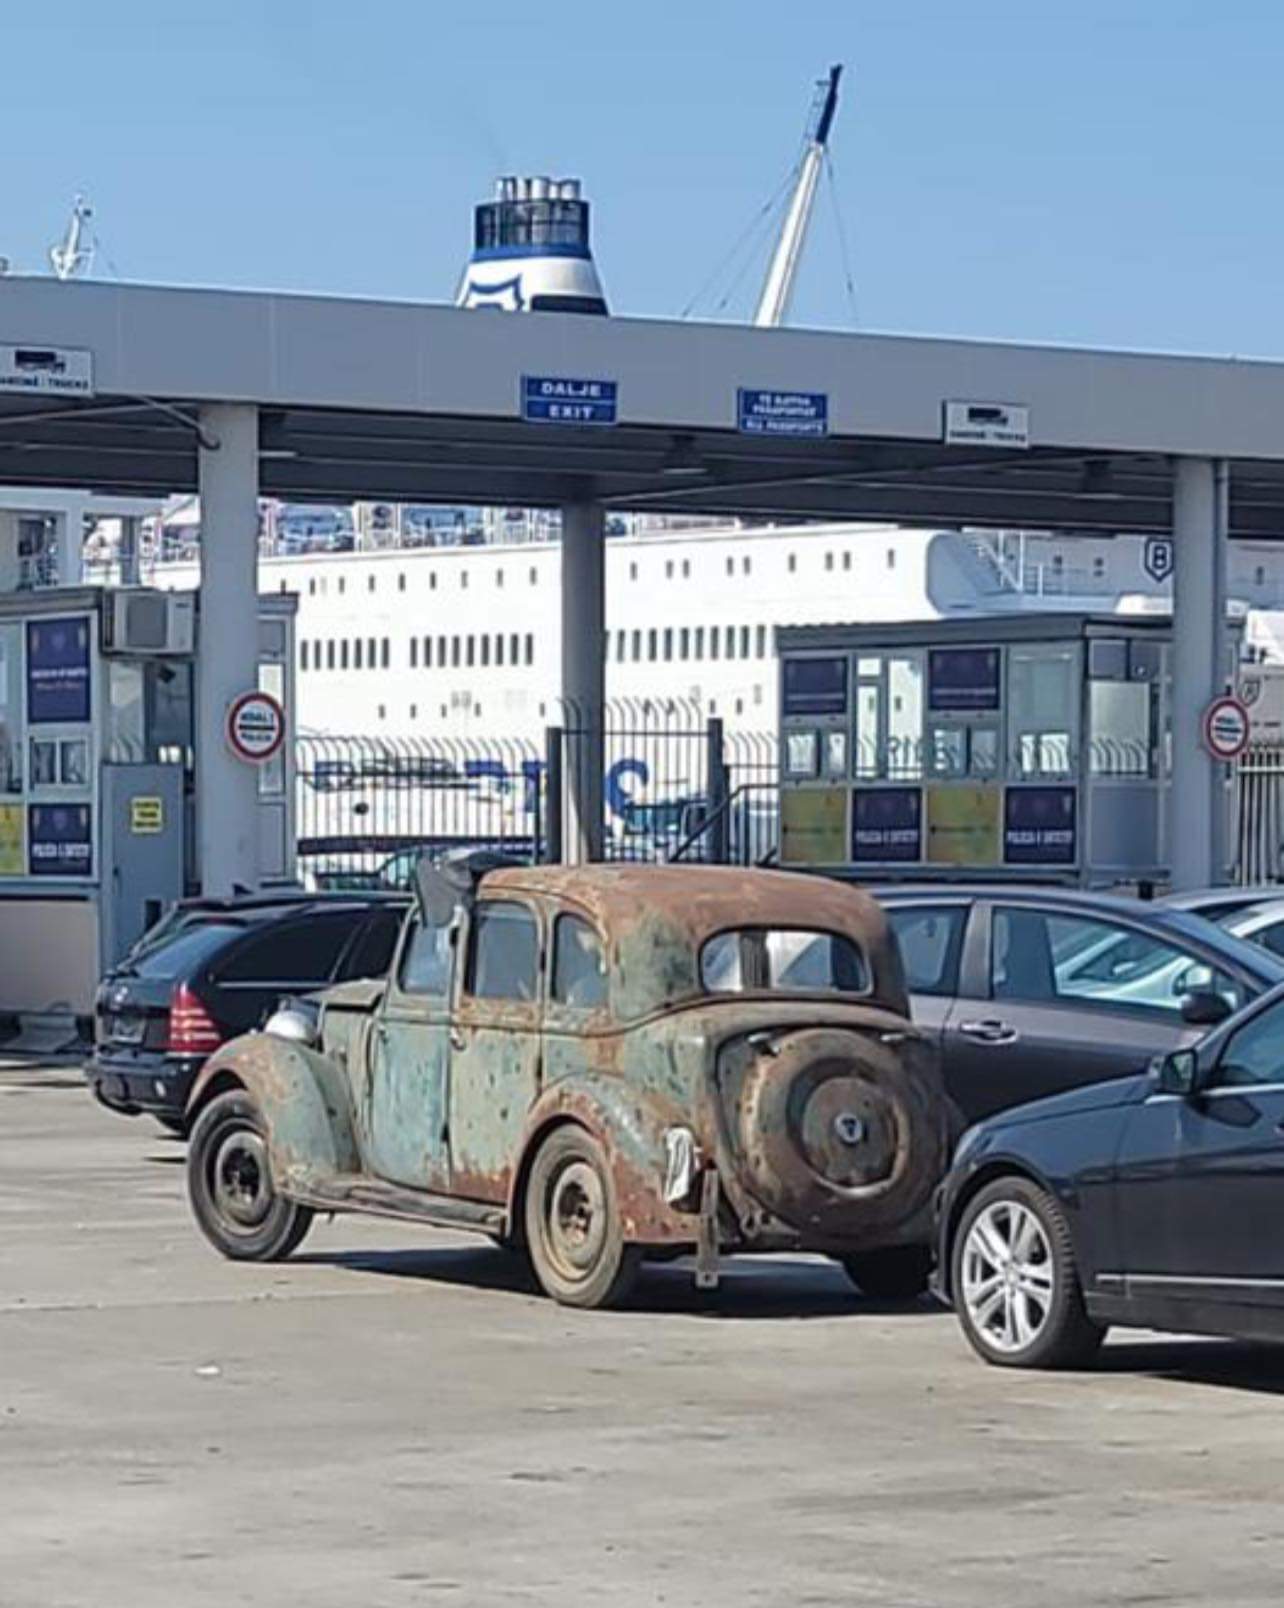 Mbërrin në portin e Durrësit makina e fundit e përdorur nga mbreti Zog